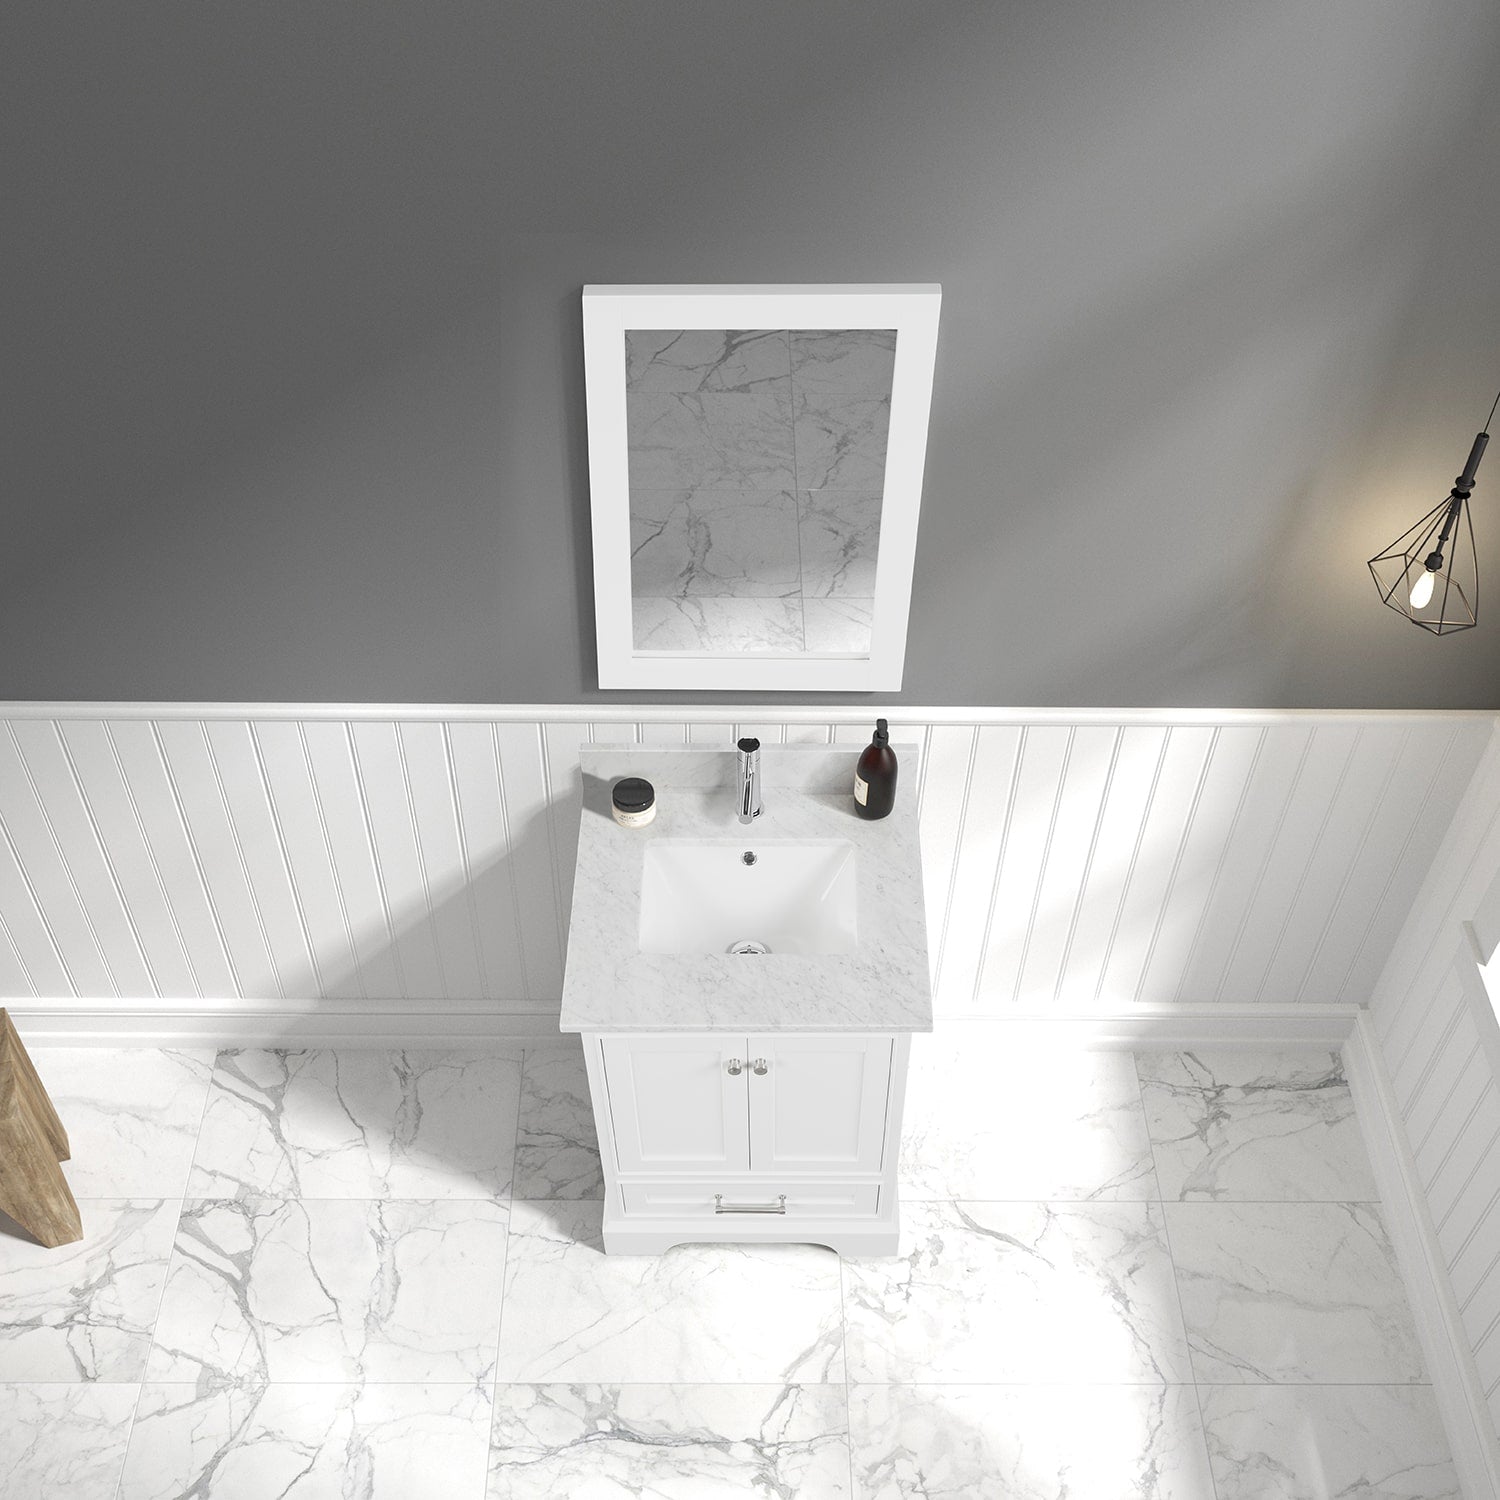 Copenhagen 24″ Bathroom Vanity with Marble Top - Contemporary Bathroom Vanity